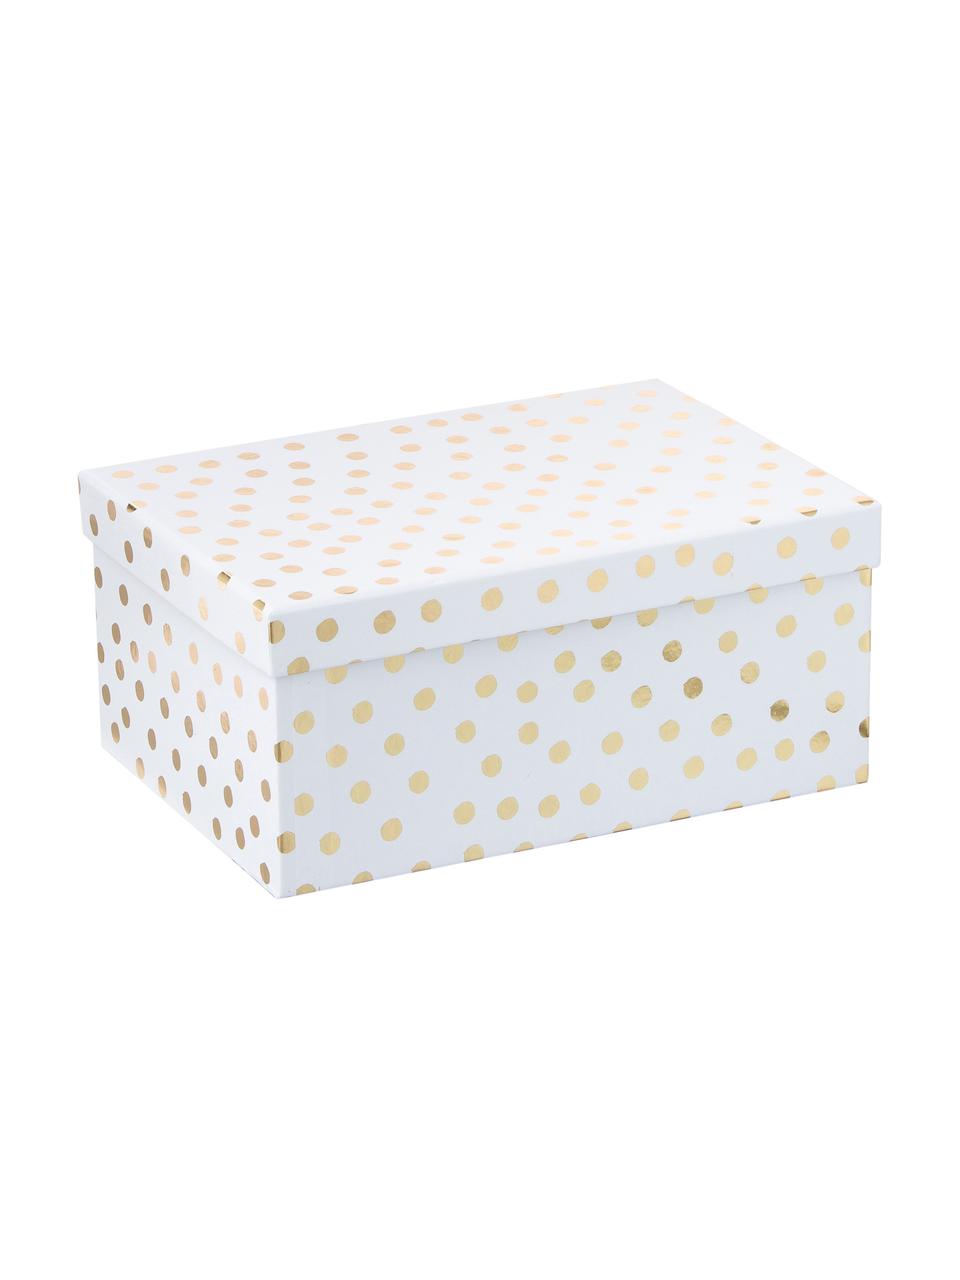 Geschenkboxen-Set Kontrast, 4-tlg., Papier, Weiß, Goldfarben, Sondergrößen